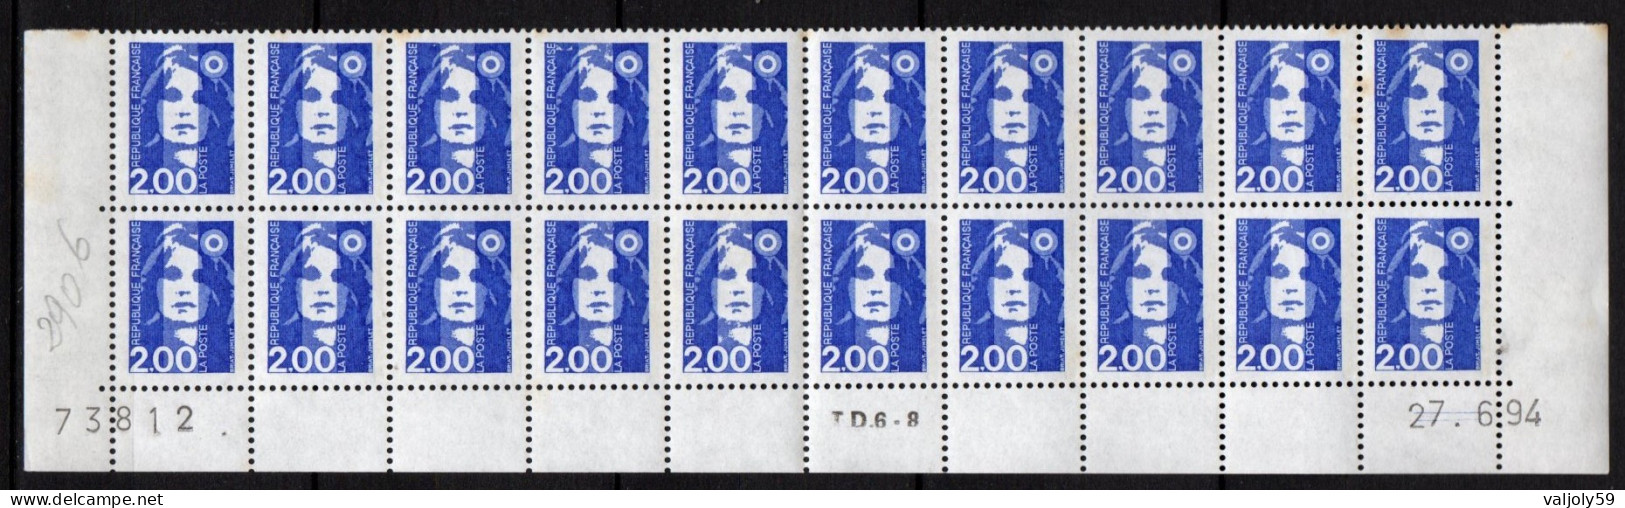 Coin Daté - YT N° 2906** Marianne Du Bicente 2,00 F Bleu - Bloc De 20 Timbres - Daté Du 27-6-94 Avec N° De Feuille 73812 - 1990-1999